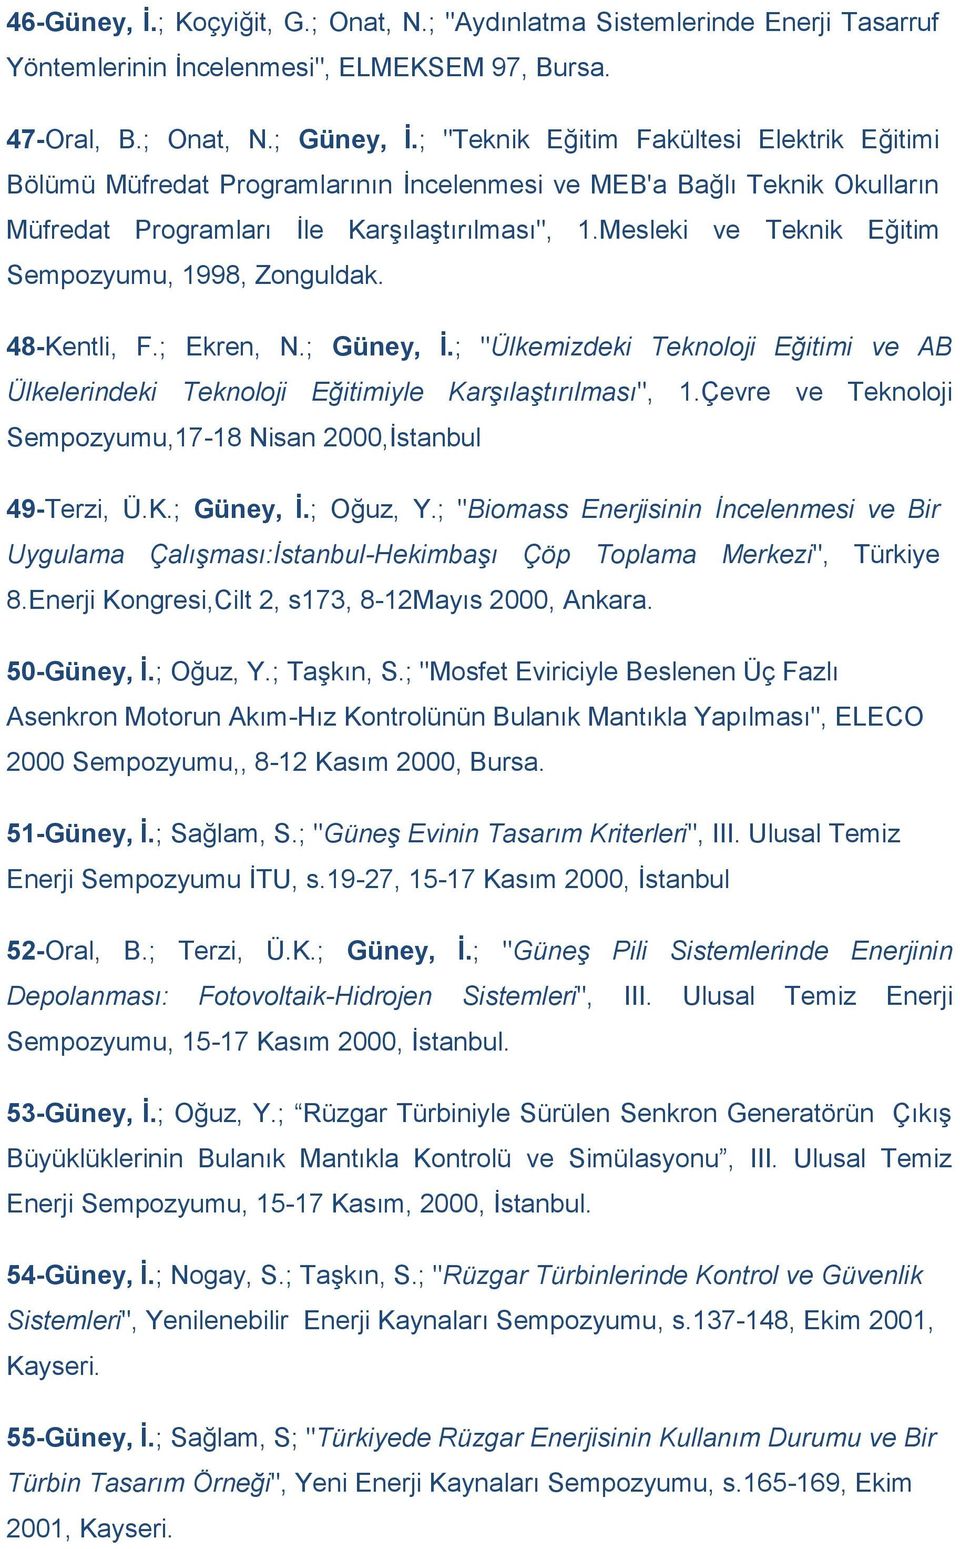 Mesleki ve Teknik Eğitim Sempozyumu, 1998, Zonguldak. 48-Kentli, F.; Ekren, N.; Güney, İ.; "Ülkemizdeki Teknoloji Eğitimi ve AB Ülkelerindeki Teknoloji Eğitimiyle Karşılaştırılması", 1.